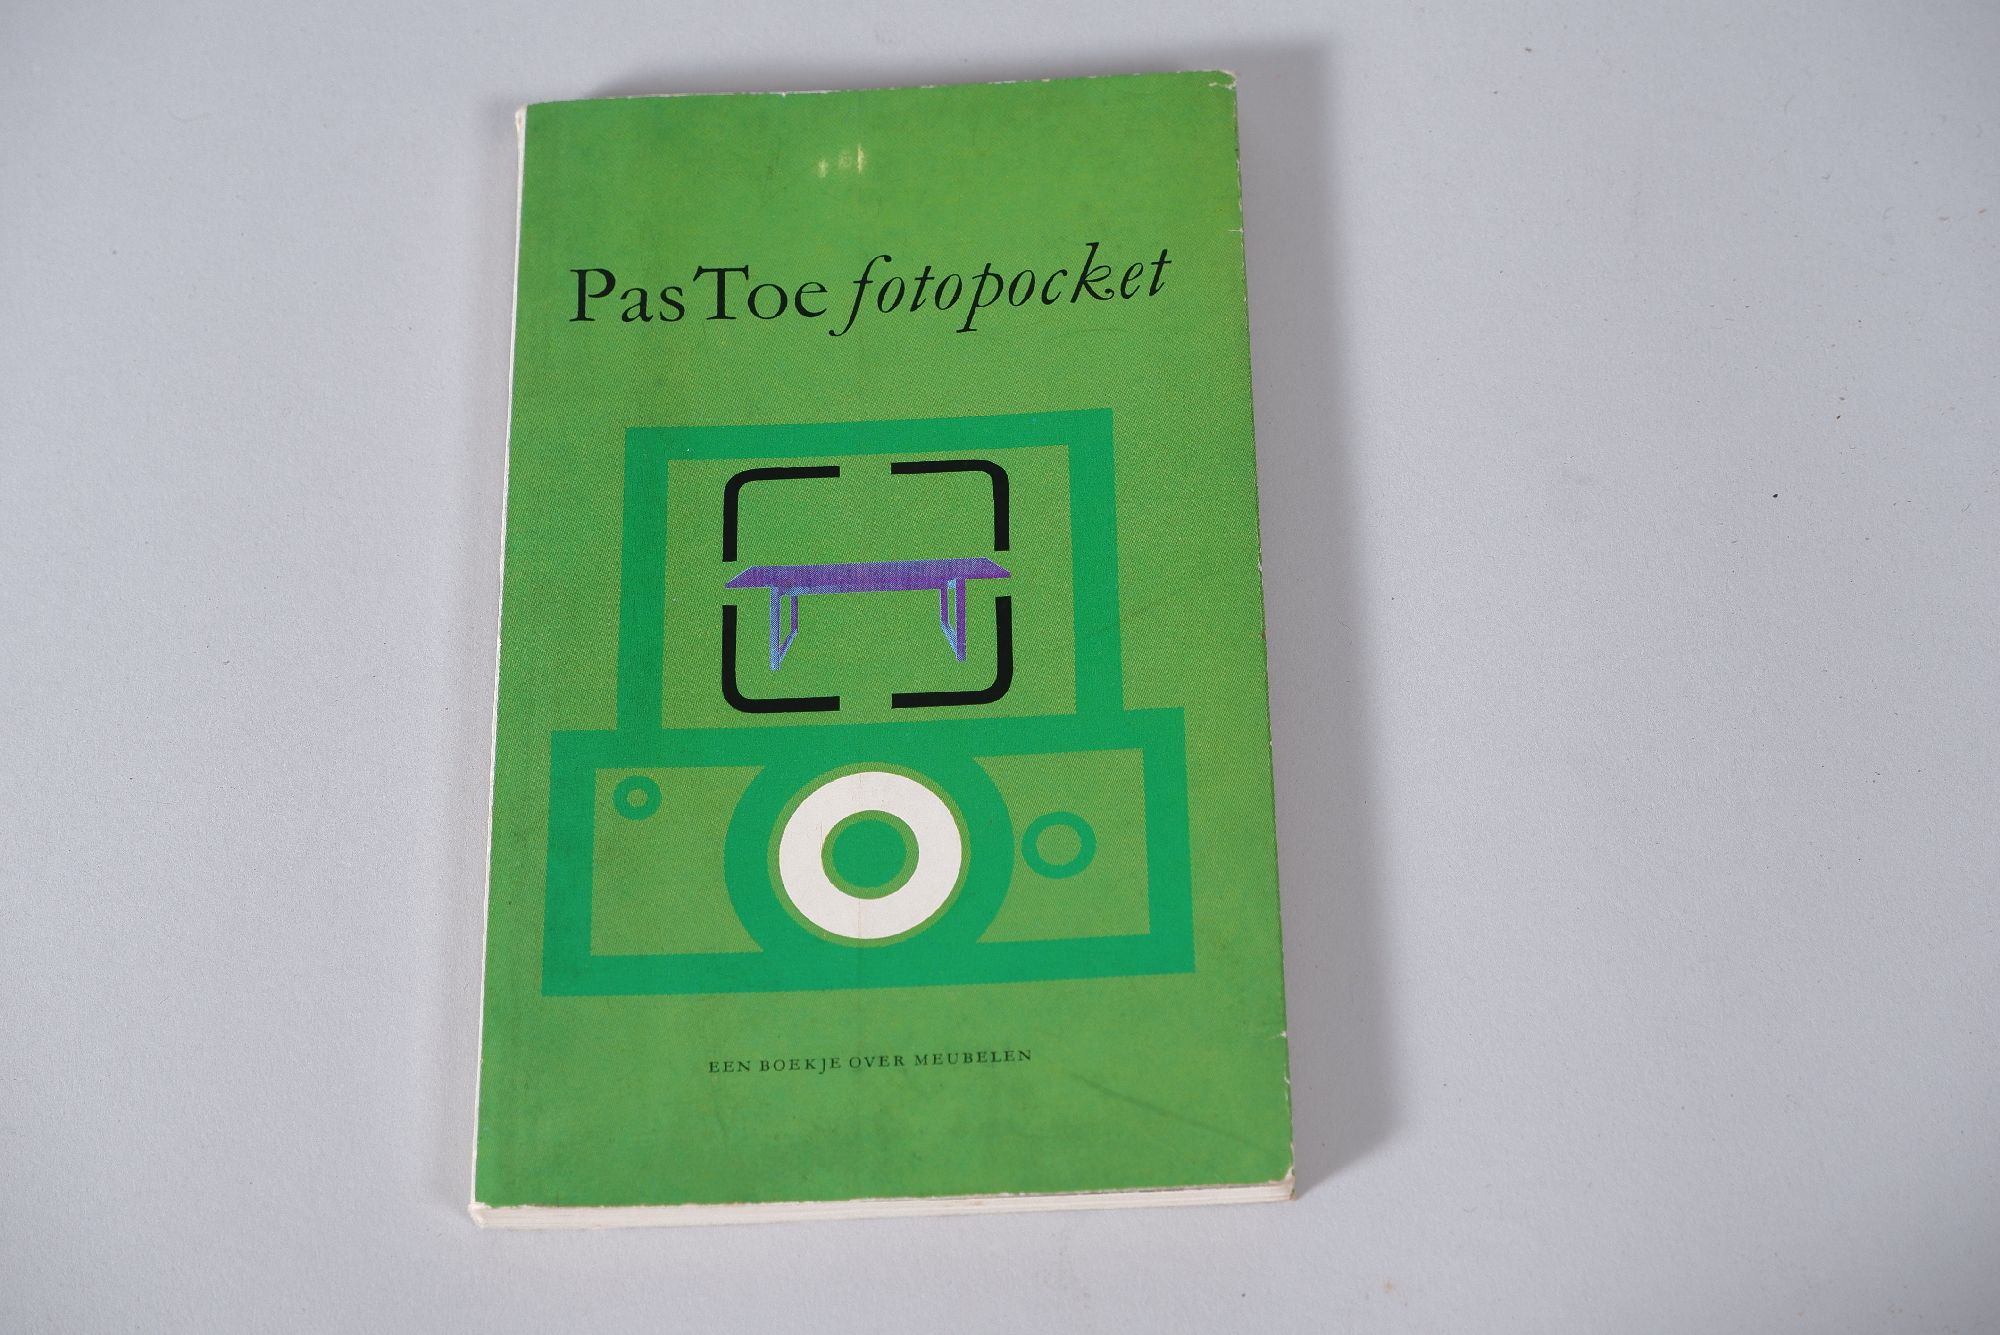 pastoe-foto-pocket